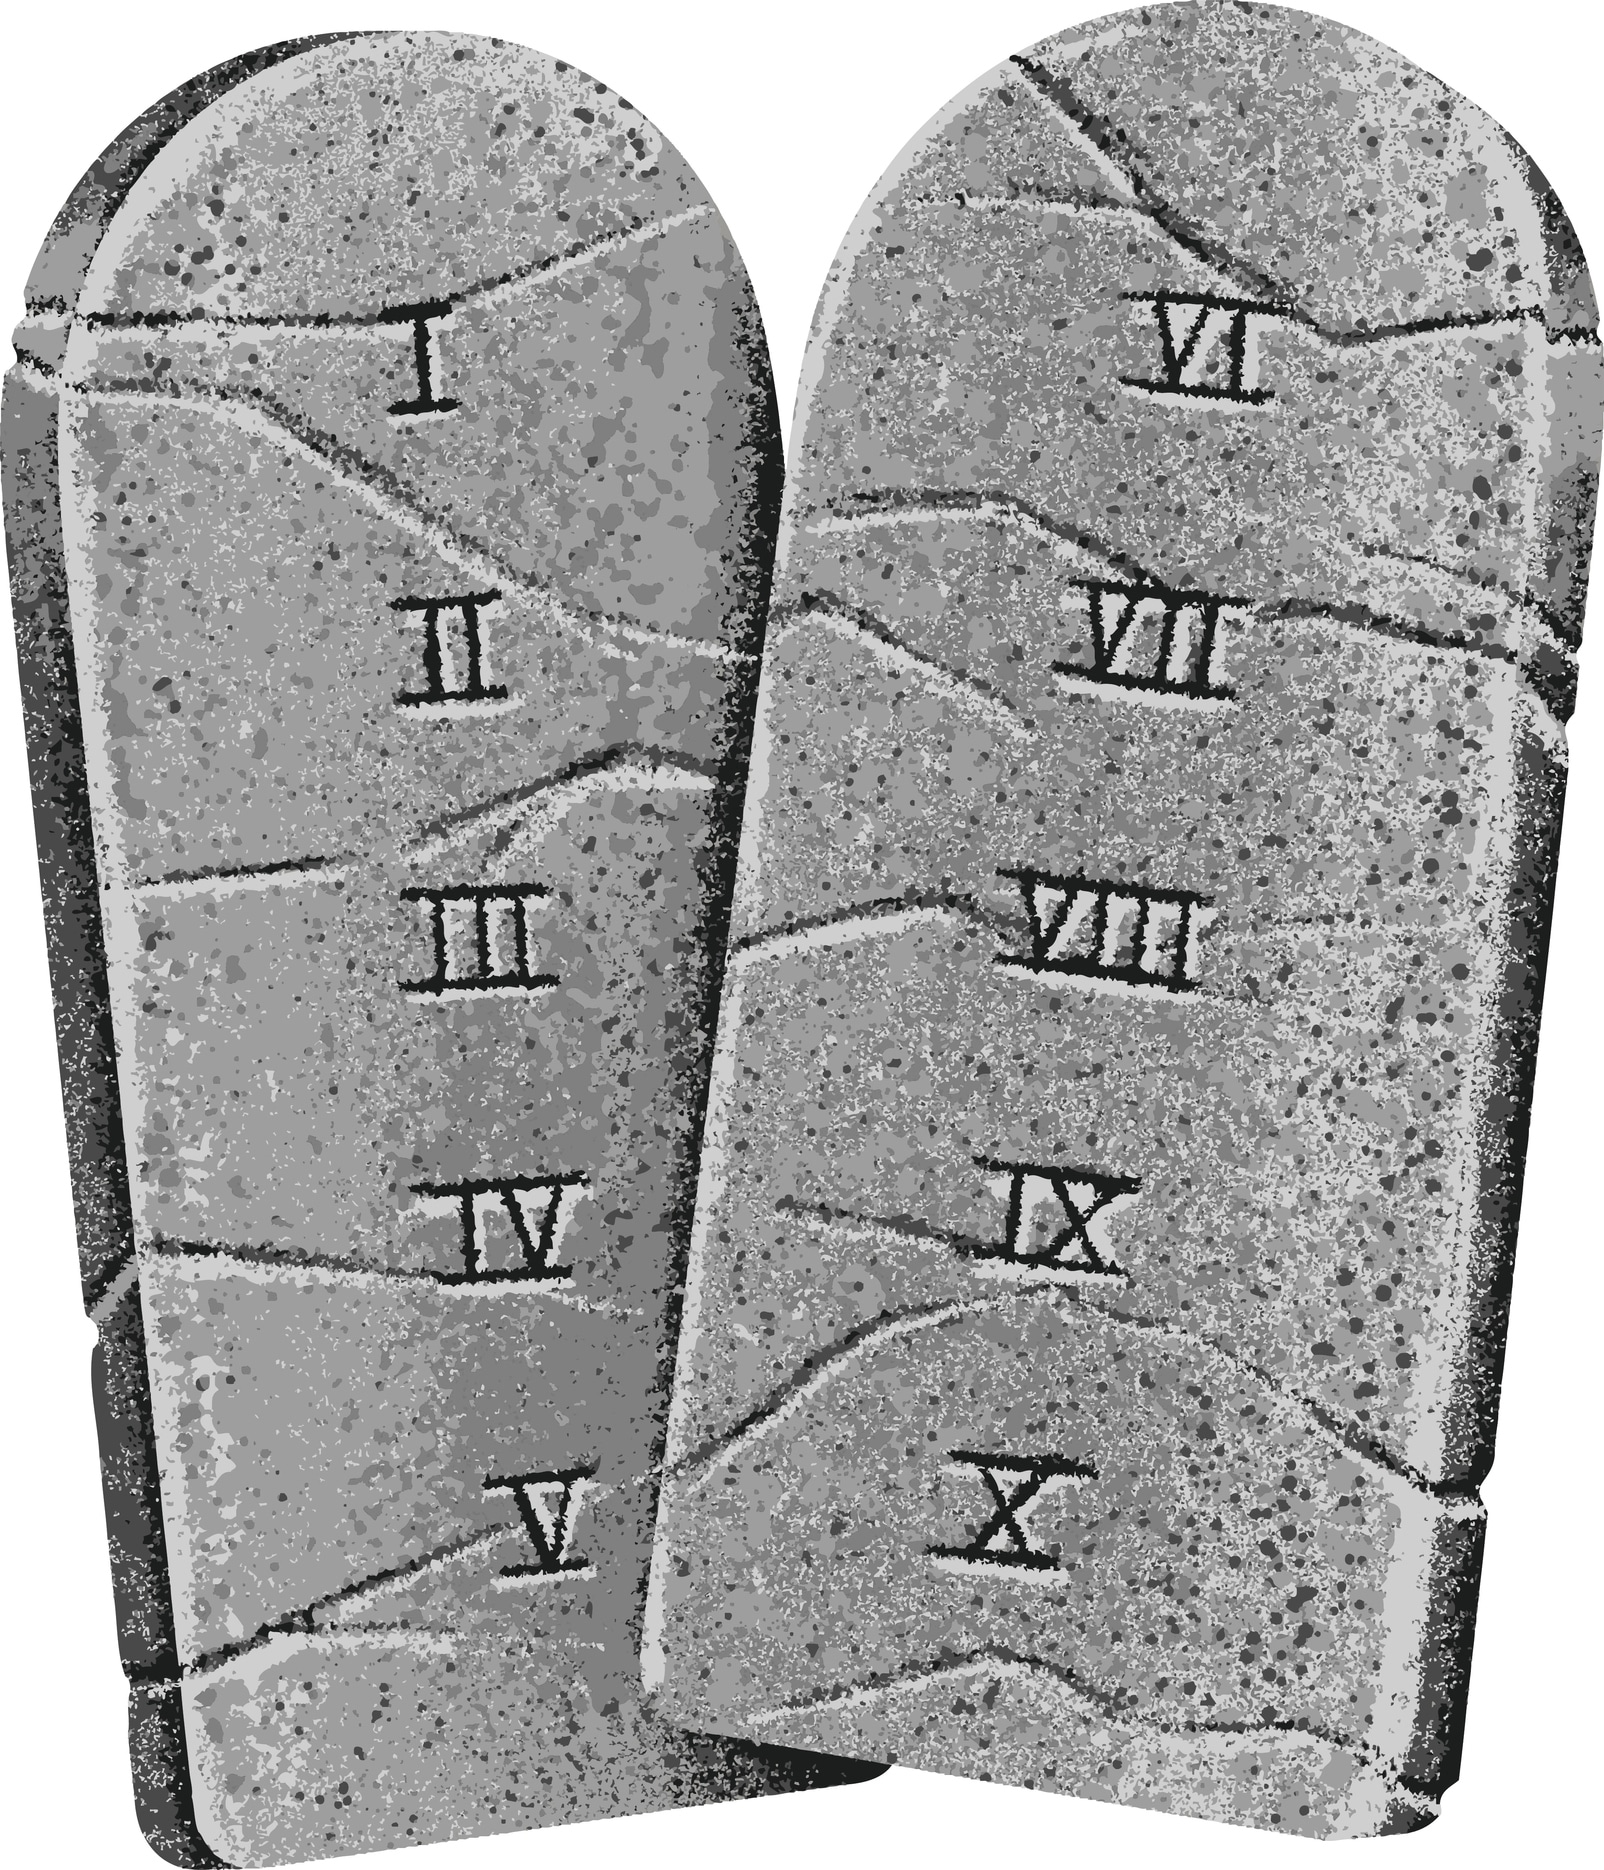 illustration of the ten commandments